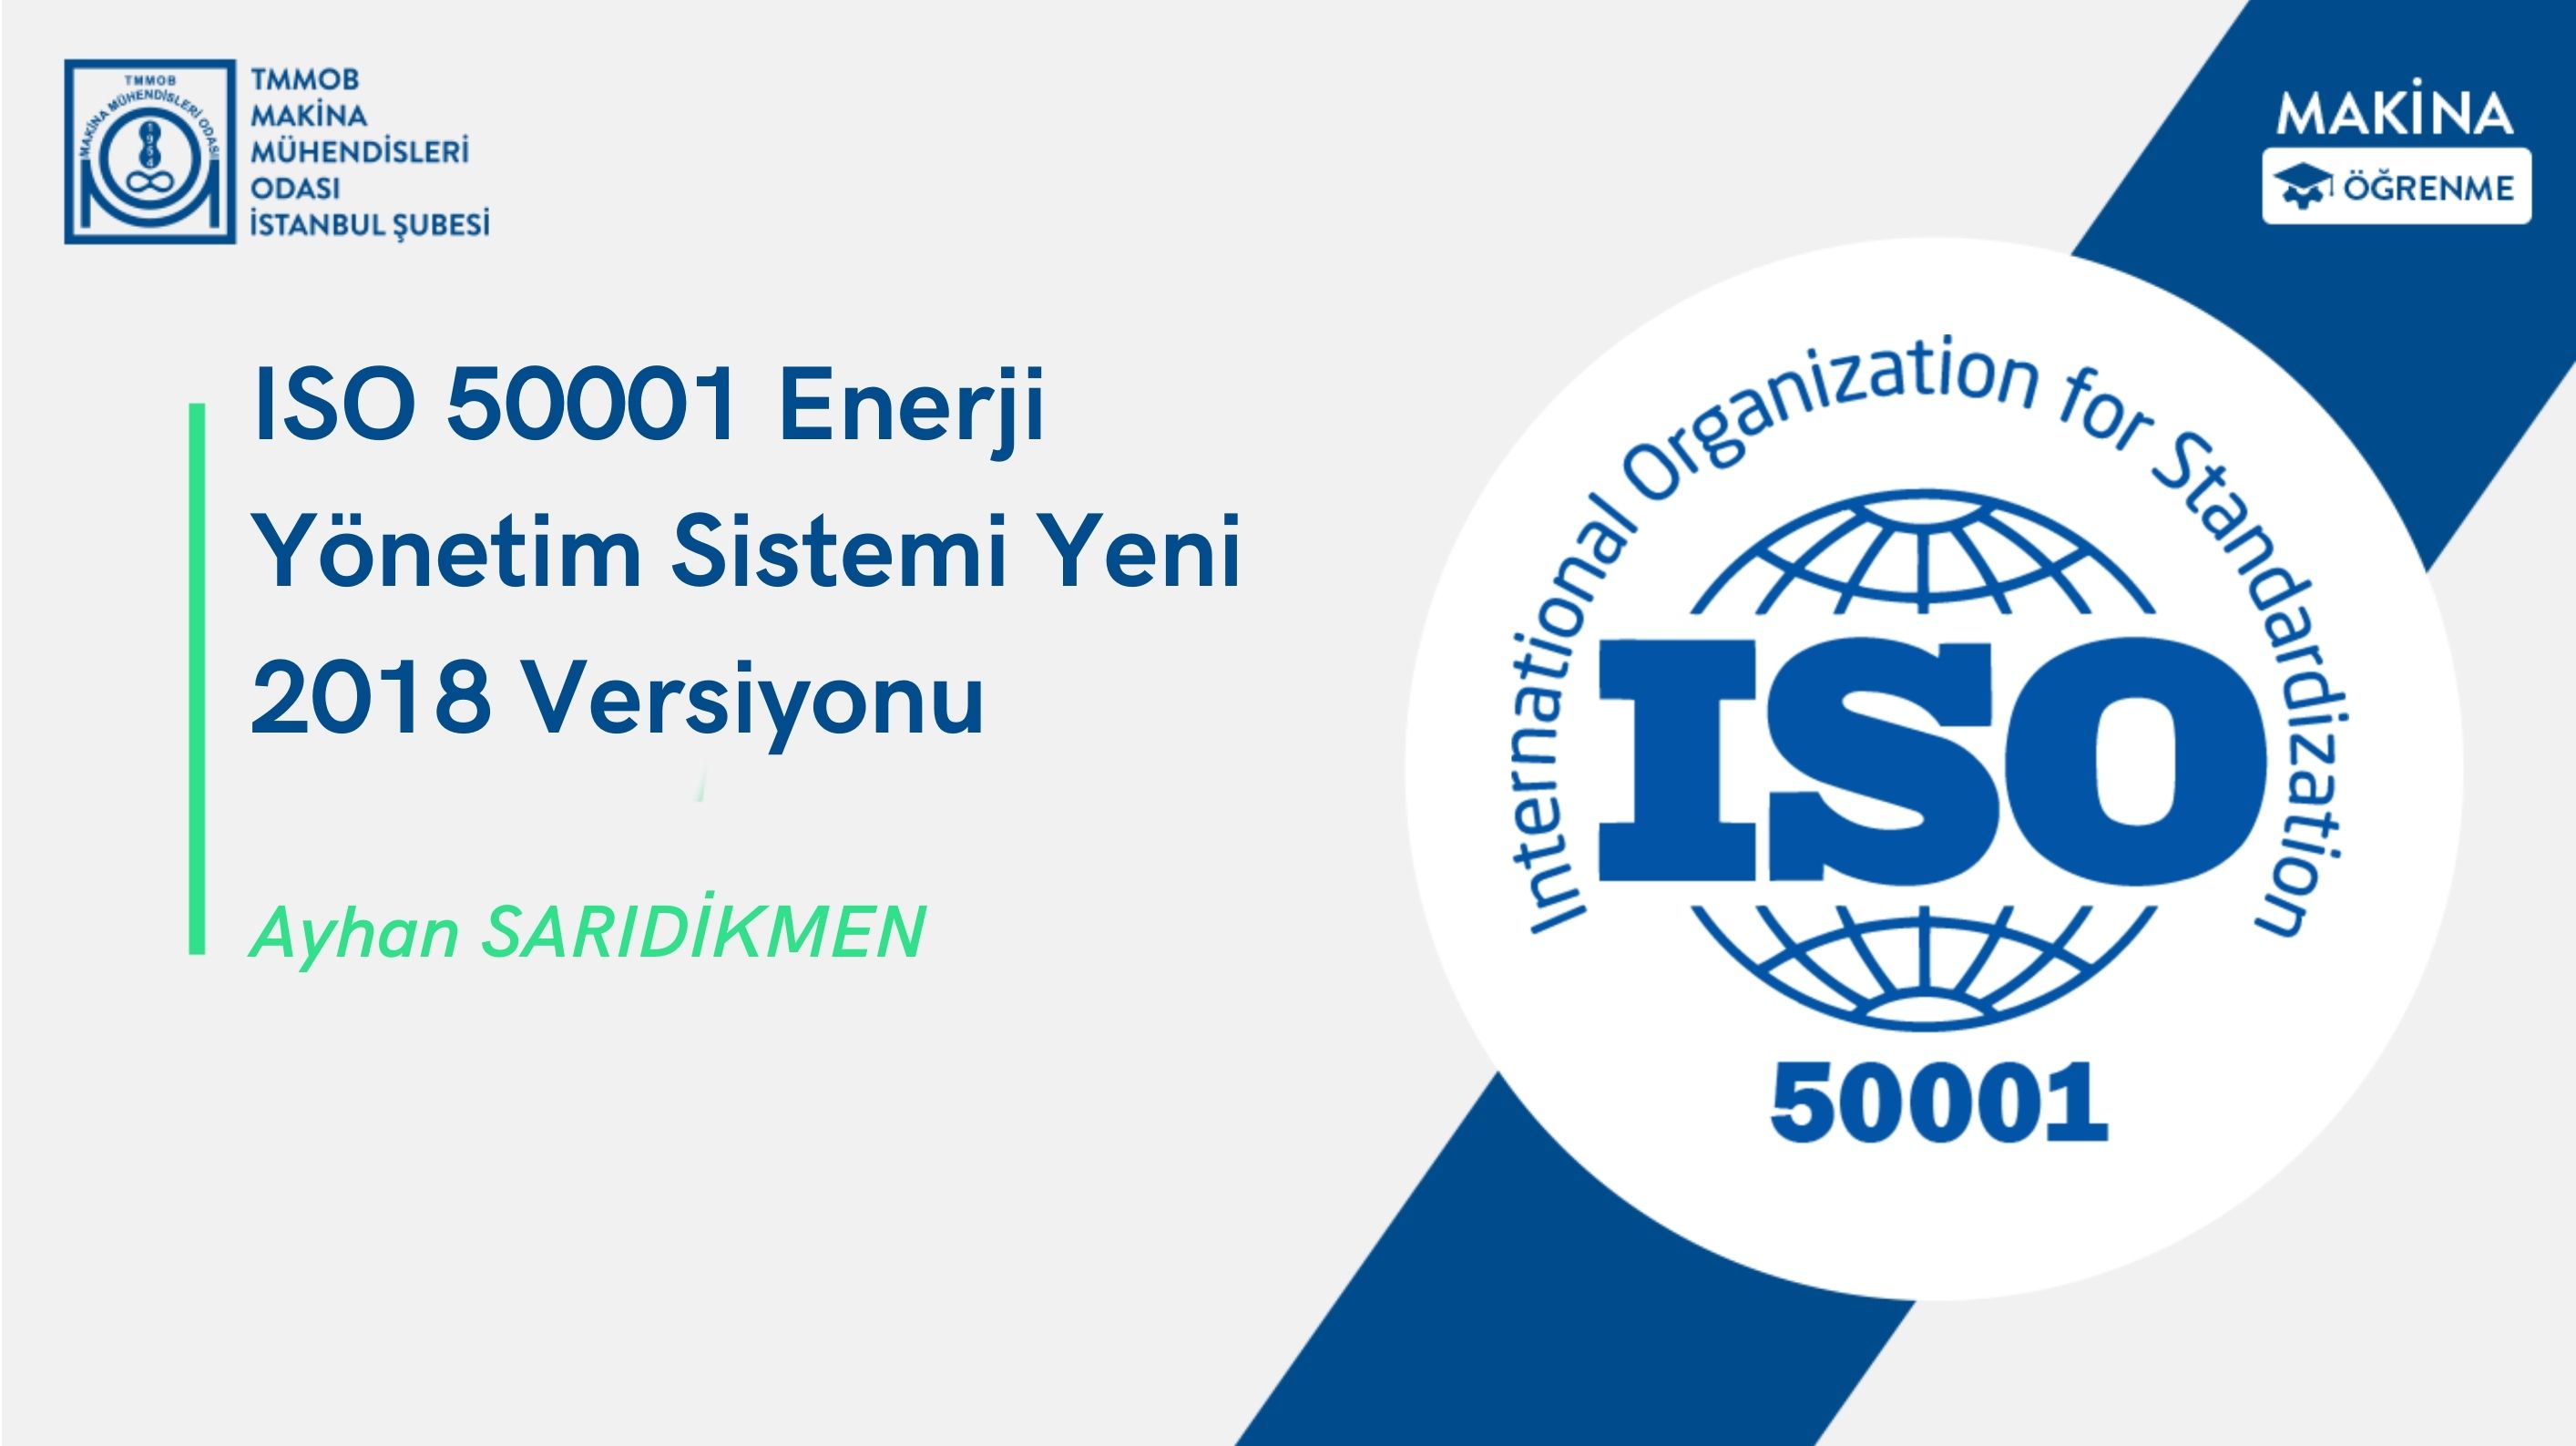 ISO 50001 Enerji Yönetim Sistemi Yeni 2018 Versiyonu